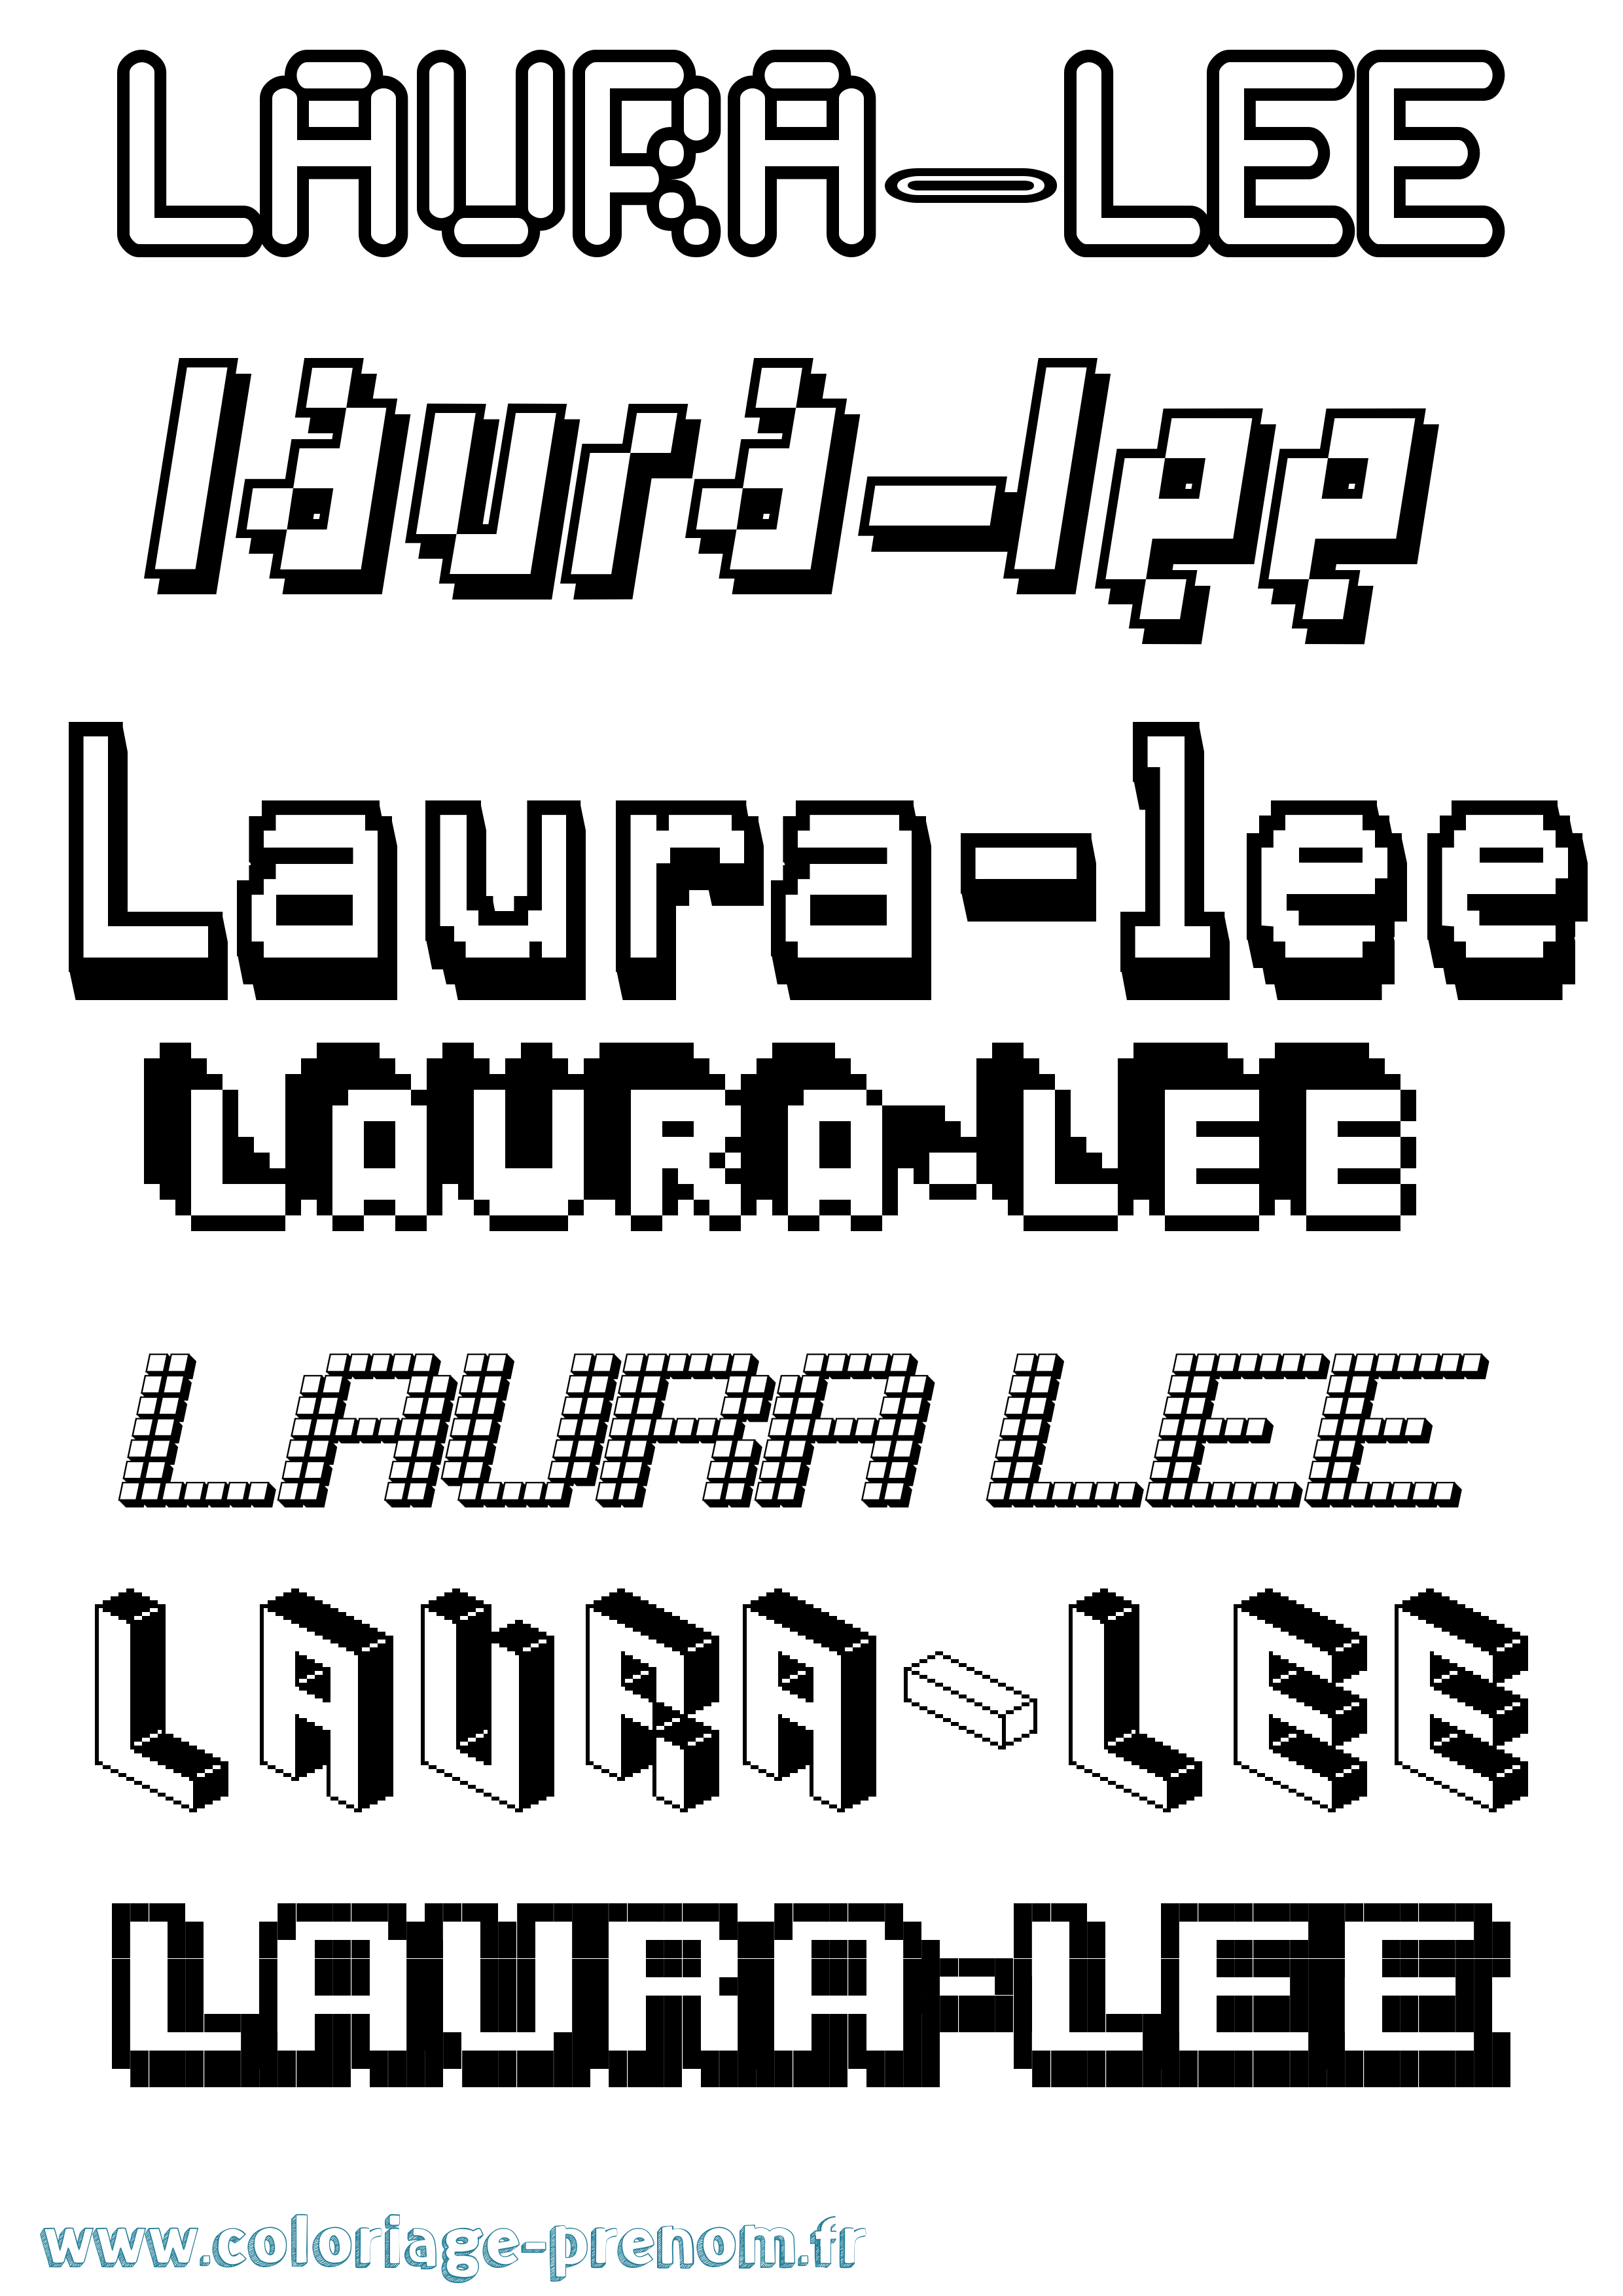 Coloriage prénom Laura-Lee Pixel